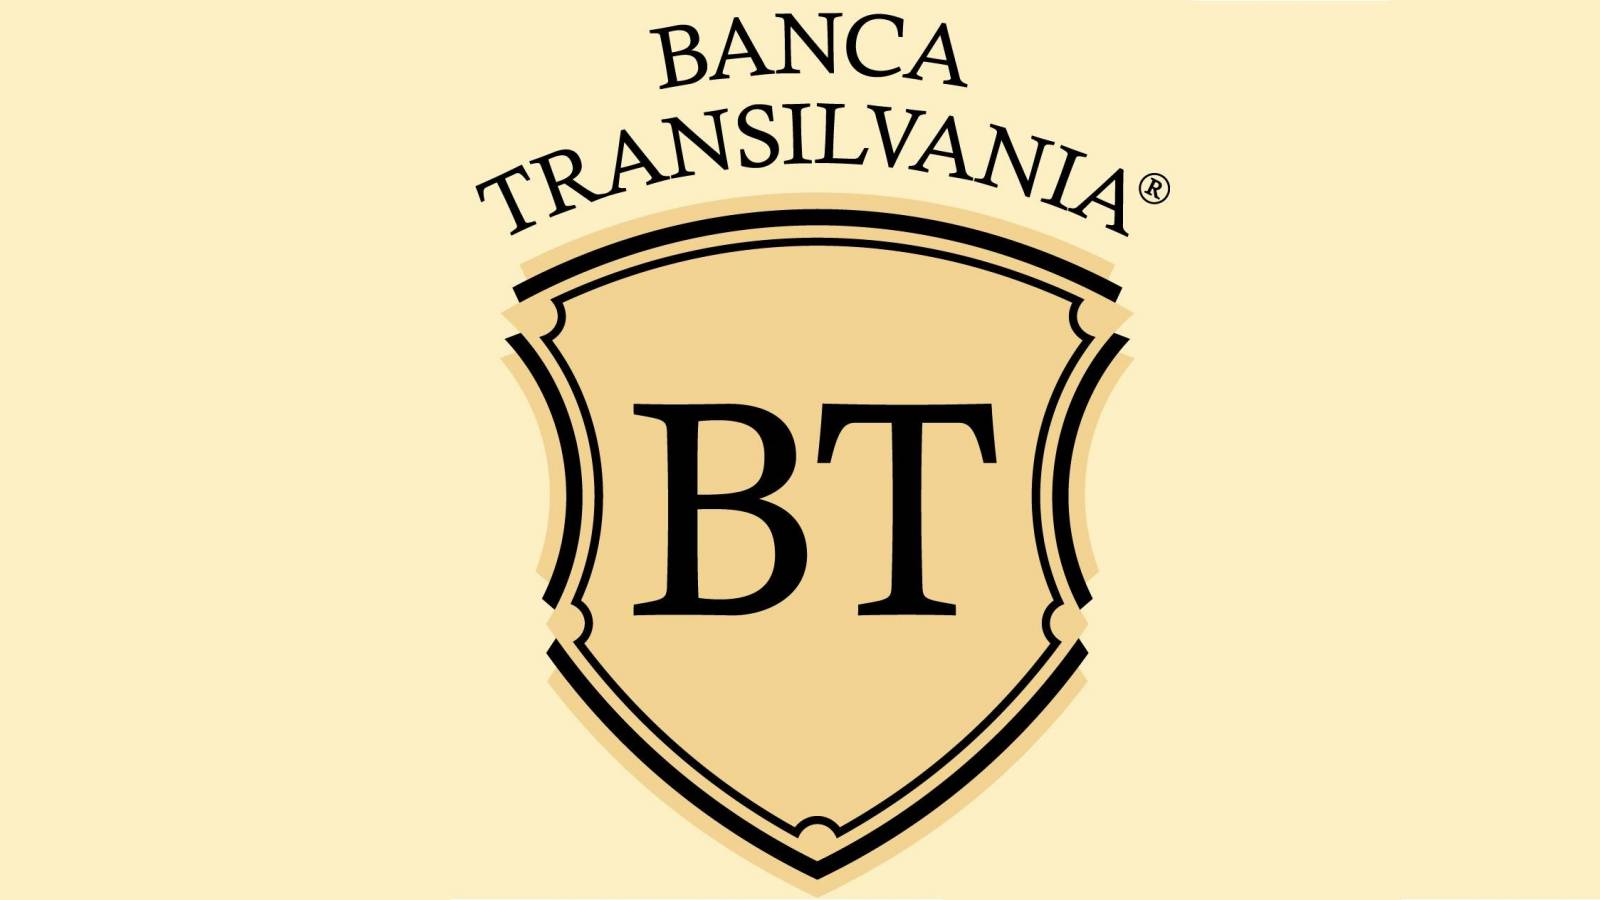 BANCA Transilvania utfärdar en extremt viktig ALARM till alla rumänska kunder